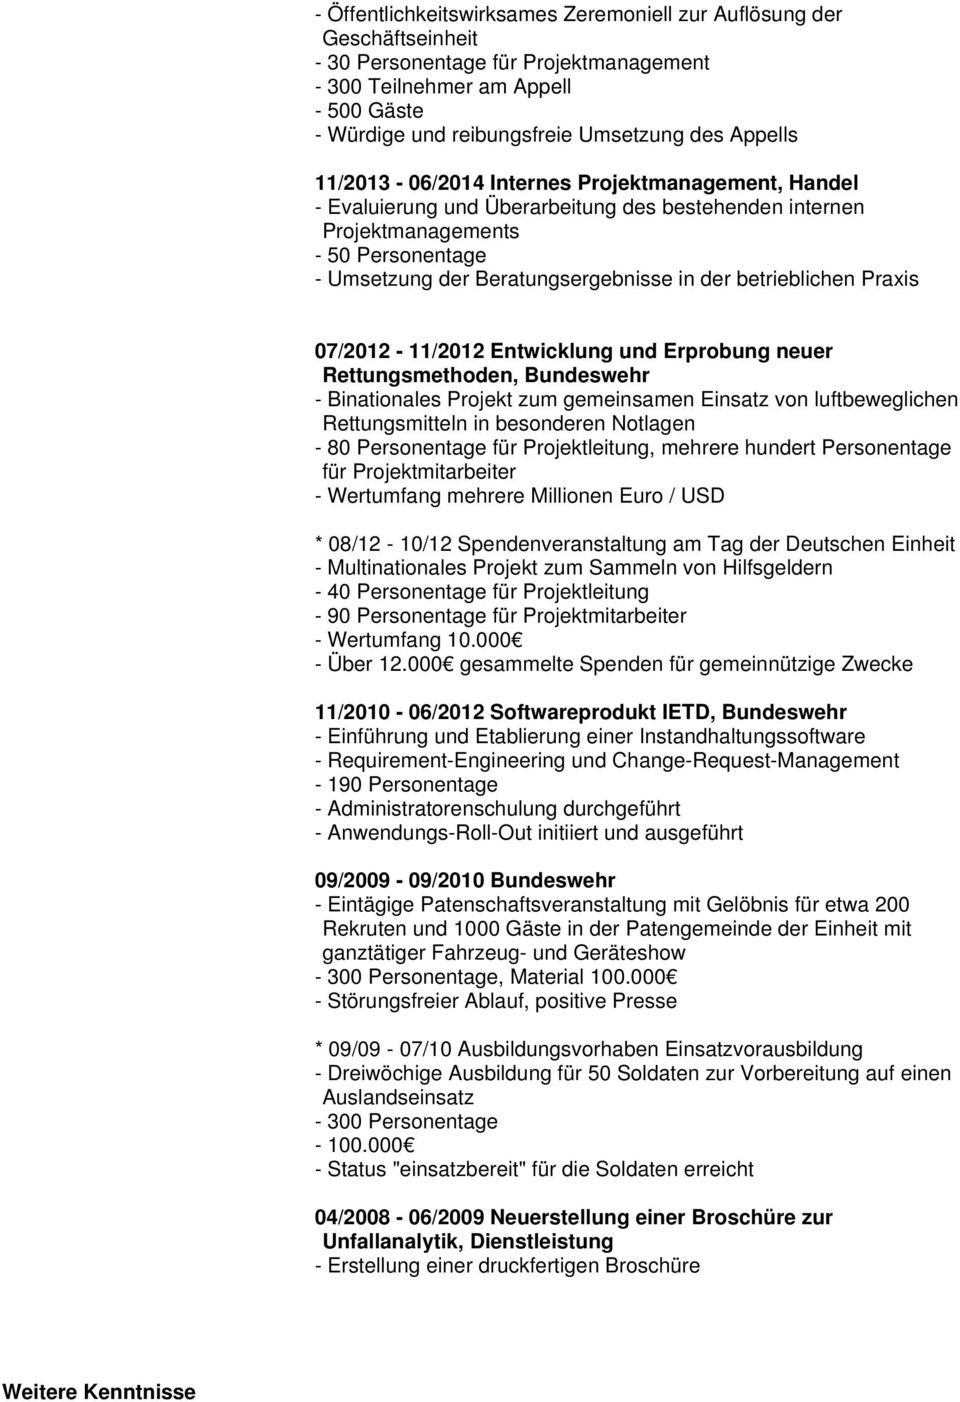 betrieblichen Praxis 07/2012-11/2012 Entwicklung und Erprobung neuer Rettungsmethoden, Bundeswehr - Binationales Projekt zum gemeinsamen Einsatz von luftbeweglichen Rettungsmitteln in besonderen